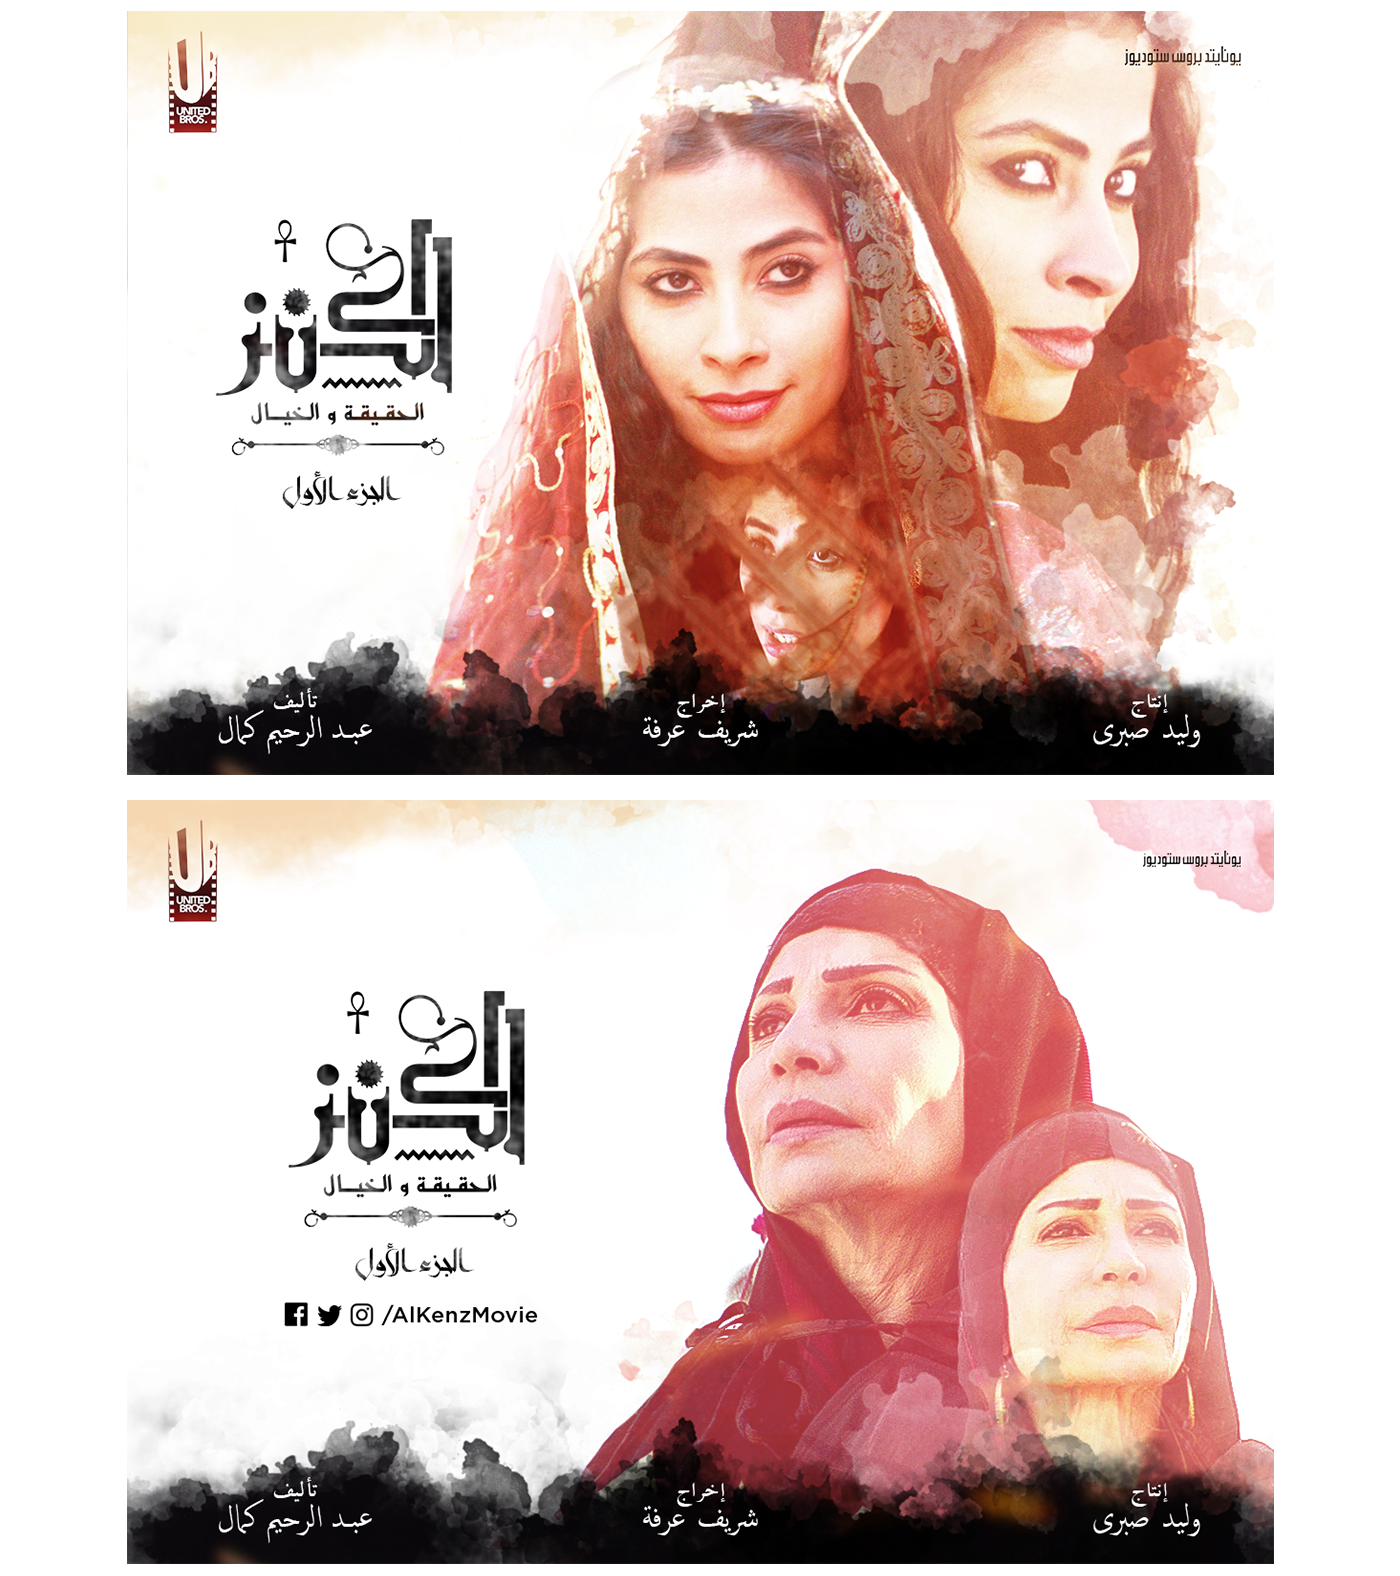 Film   poster social media Mohamed Ramadan Mohamed Saad Hend Sabry Production art blending